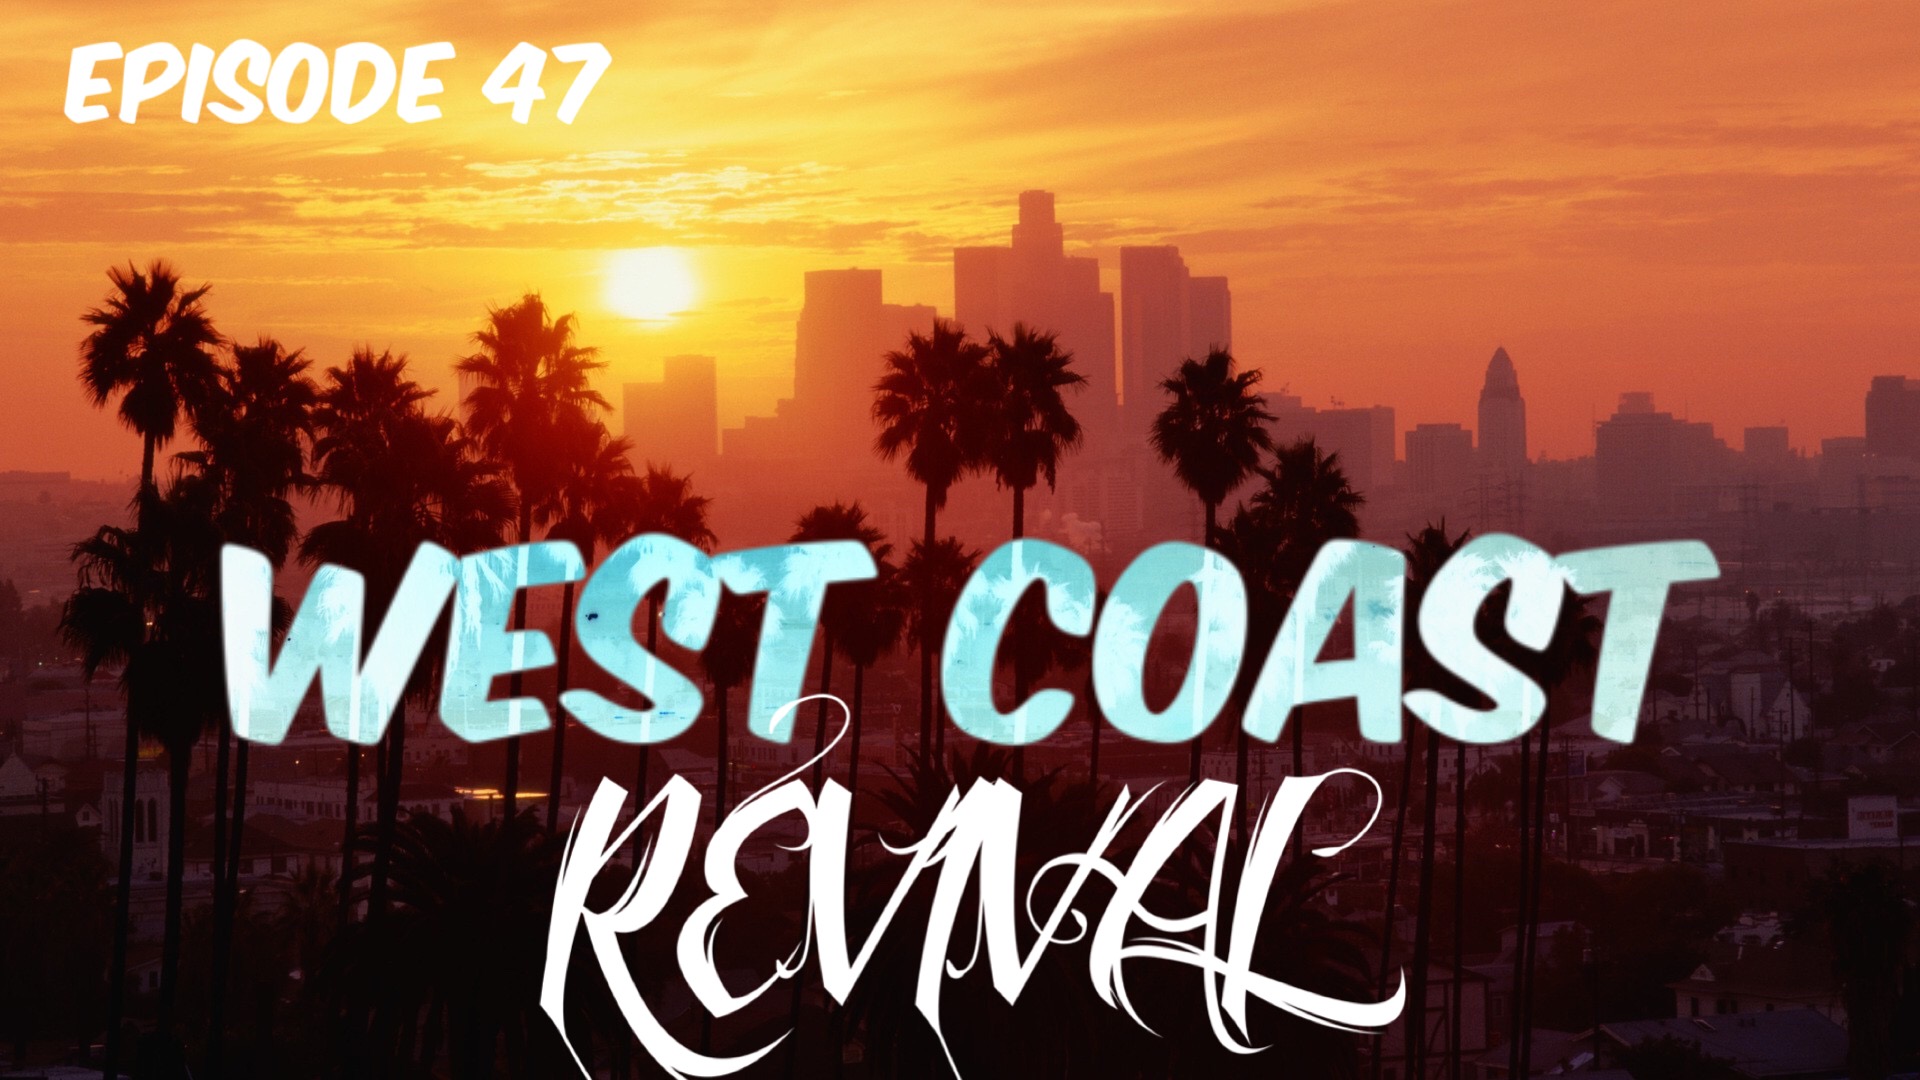 Episode 47: West Coast Revival